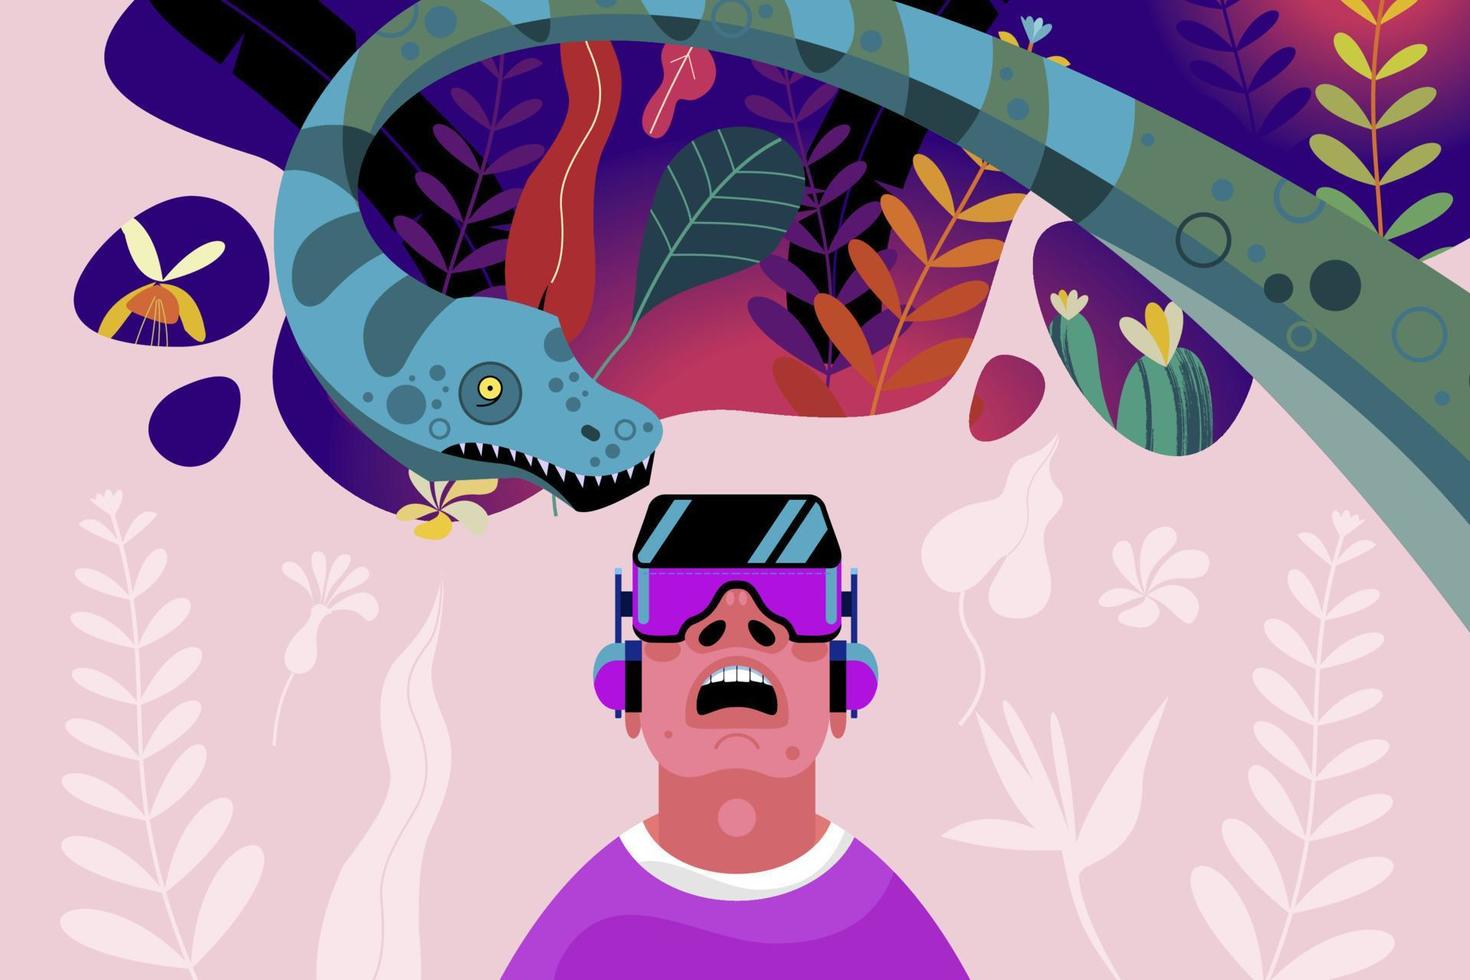 realta virtuale. l'uomo con gli occhiali della realtà virtuale nella giungla del periodo mesozoico tra dinosauri e piante tropicali. vettore